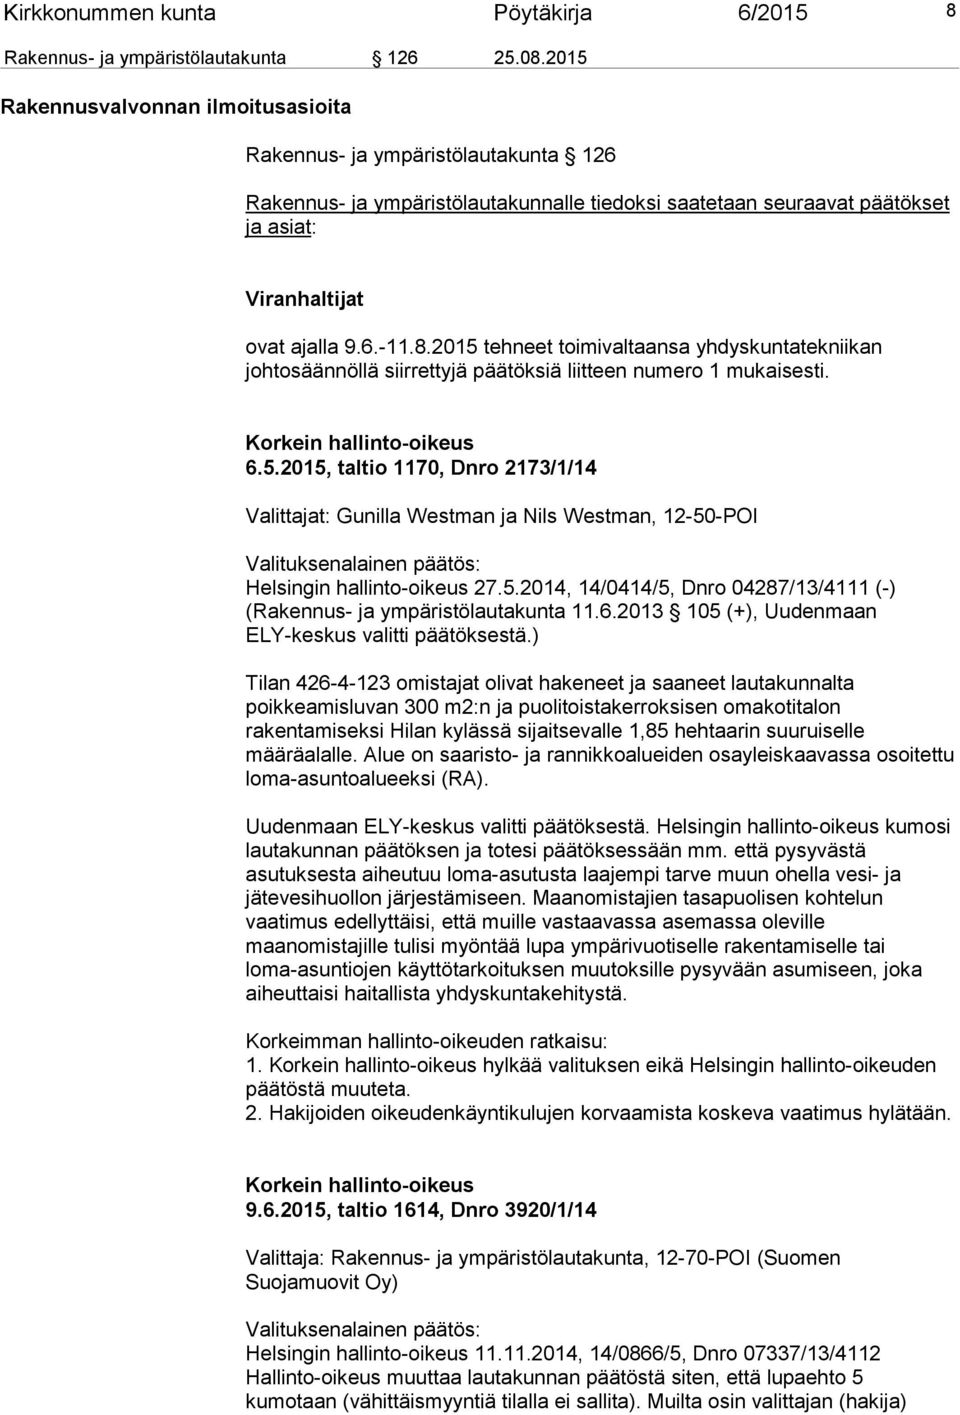 2015 tehneet toimivaltaansa yhdyskuntatekniikan johtosäännöllä siirrettyjä päätöksiä liitteen numero 1 mukaisesti. Korkein hallinto-oikeus 6.5.2015, taltio 1170, Dnro 2173/1/14 Valittajat: Gunilla Westman ja Nils Westman, 12-50-POI Valituksenalainen päätös: Helsingin hallinto-oikeus 27.